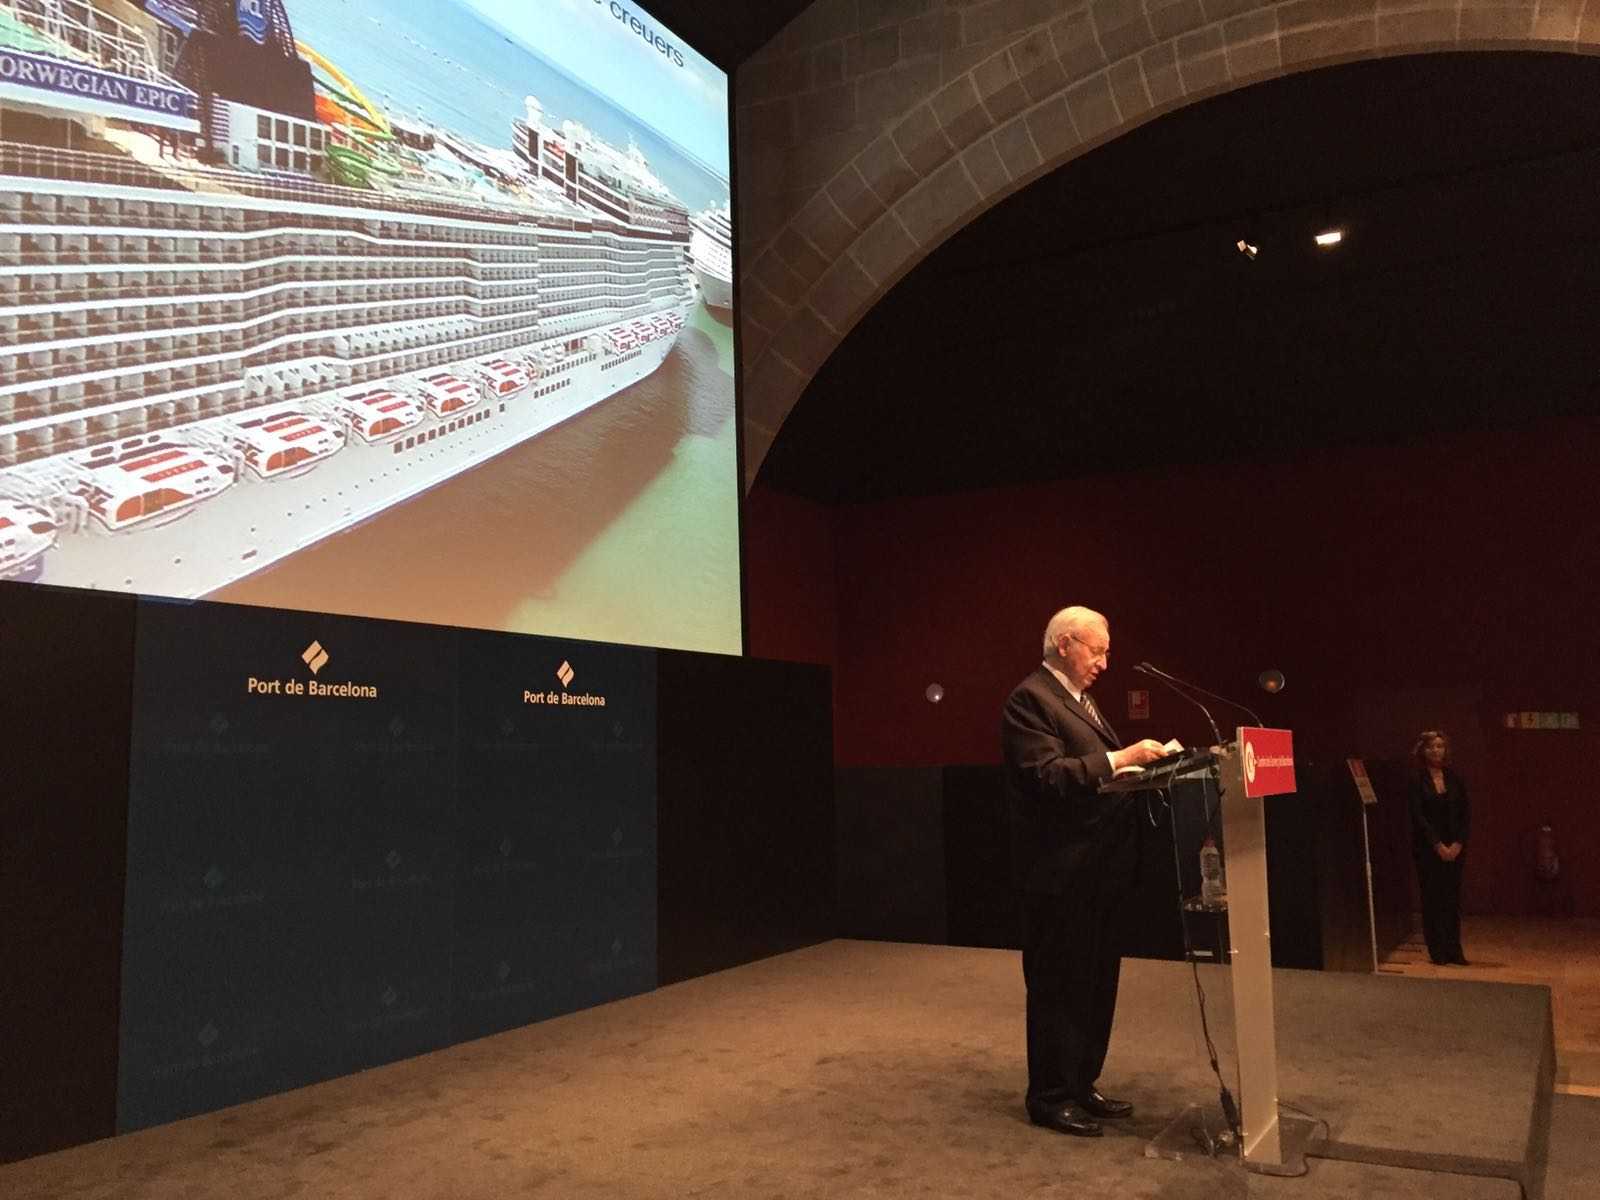 Cruceros en Barcelona: cifras millonarias sin un apoyo unánime